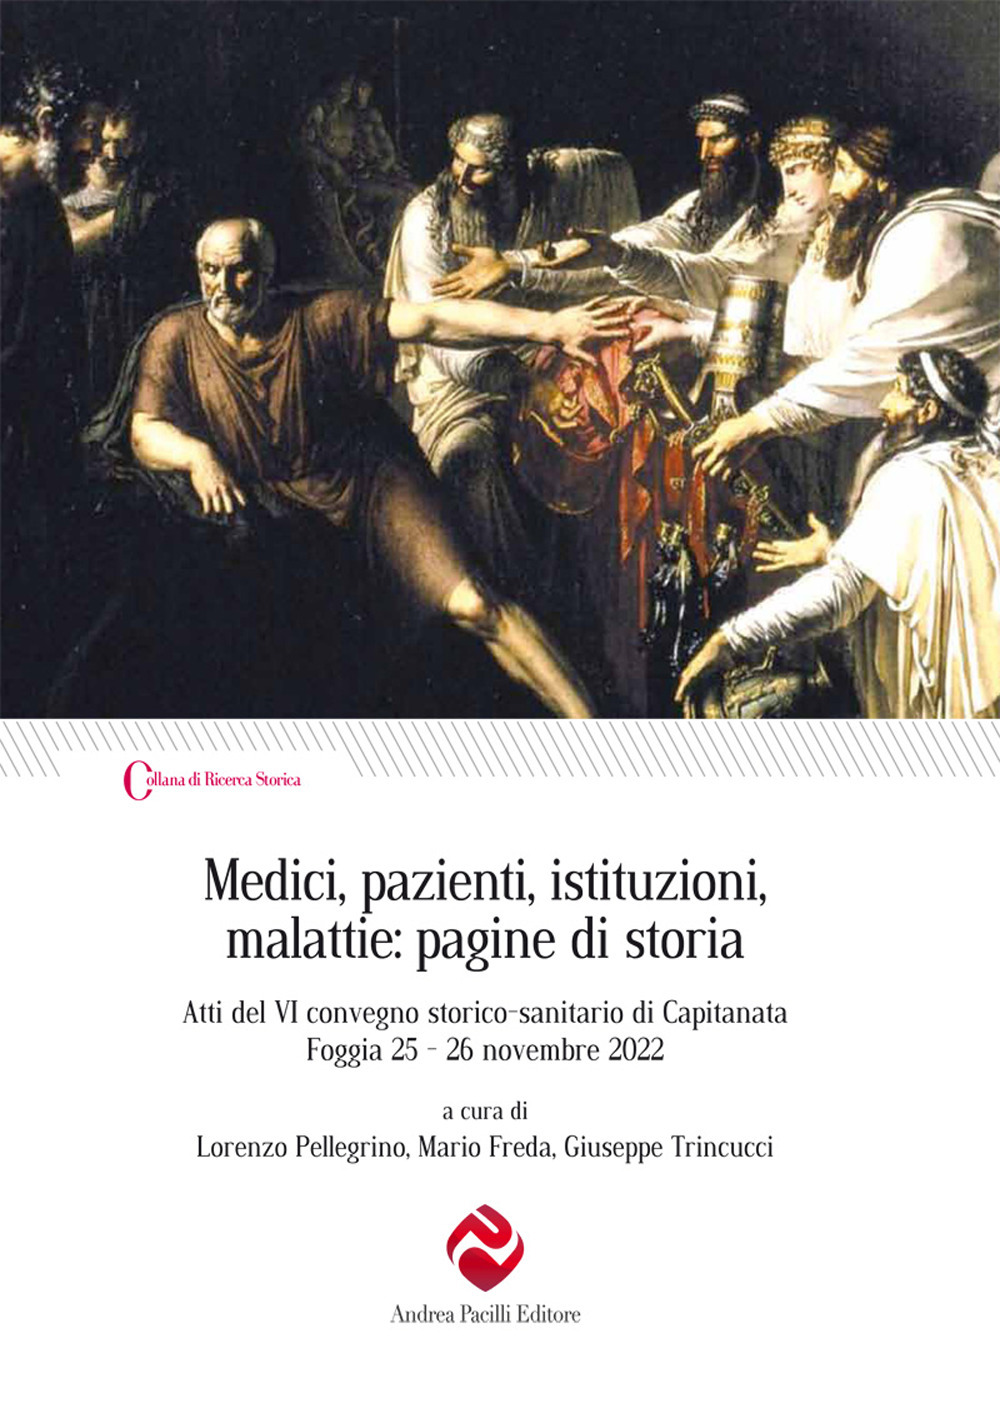 Medici, pazienti, istituzioni, malattie: pagine di storia. Atti del VI convegno storico-sanitario di Capitanata (Foggia 25-26 novembre 2022)